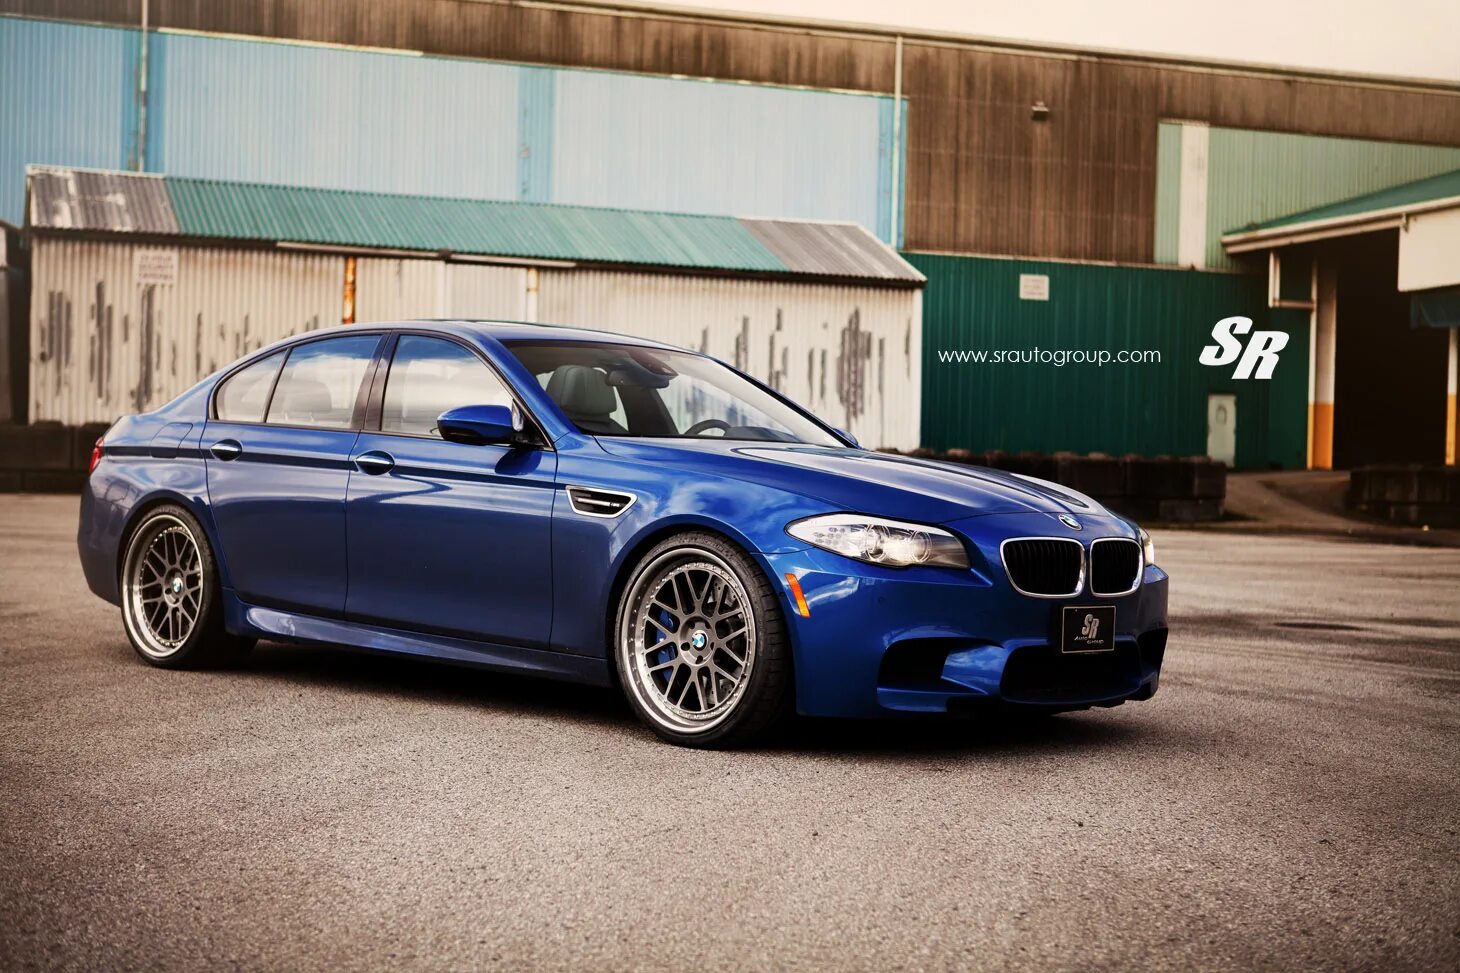 Bmw f10 m. BMW m5 f10. BMW 5 f10. BMW m3 f10. BMW m5 f10 Blue.